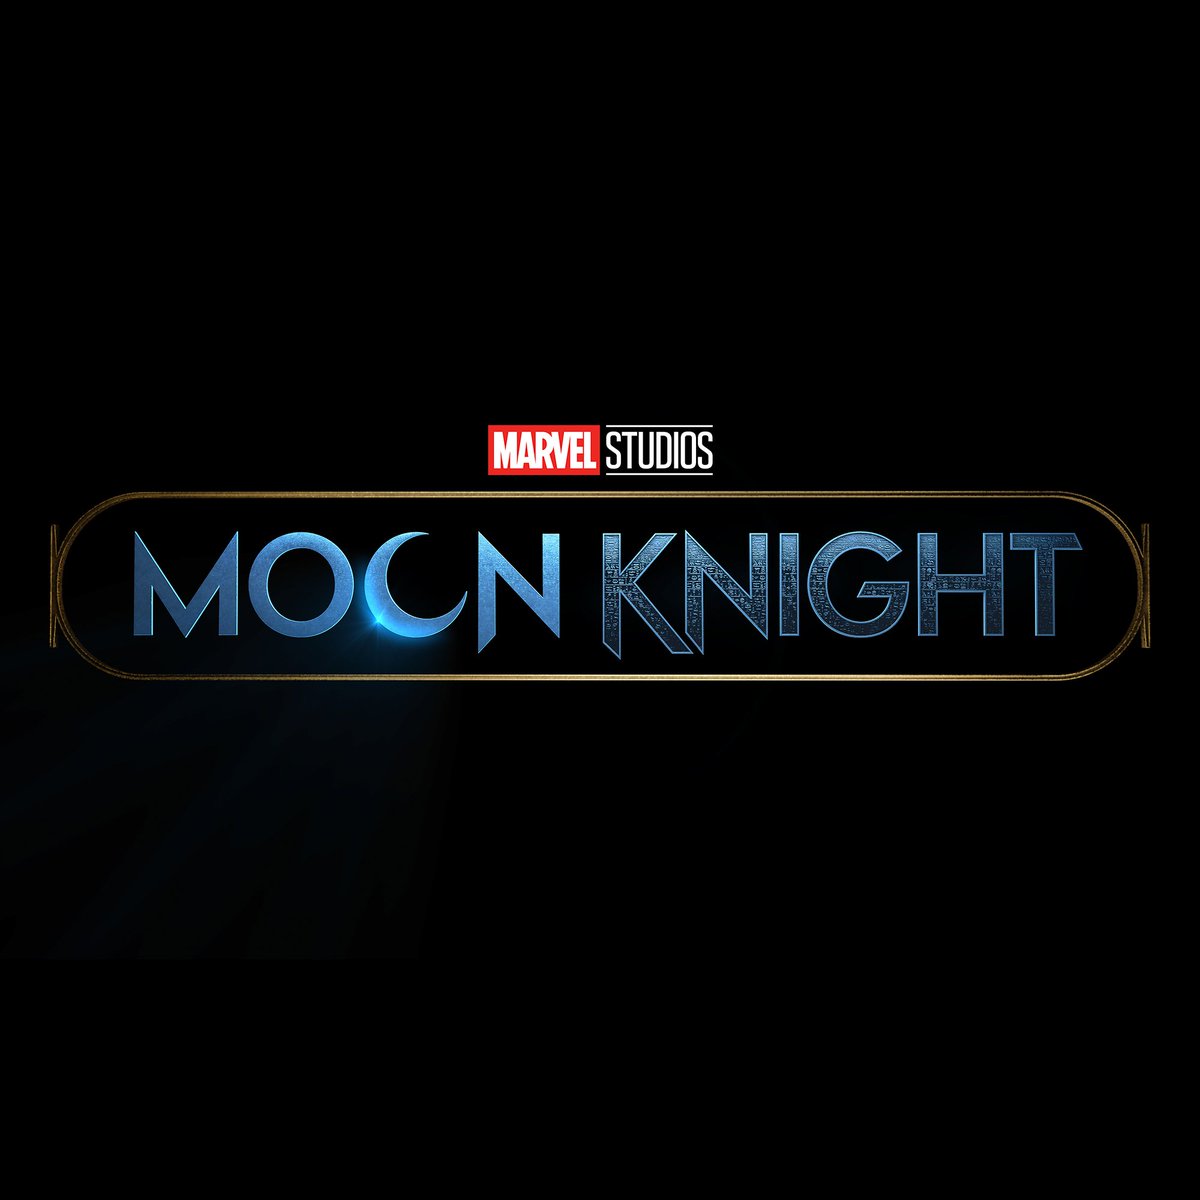 Moon Knight questiona a realidade em nova fase da Marvel - Agência de  Notícias CEUB